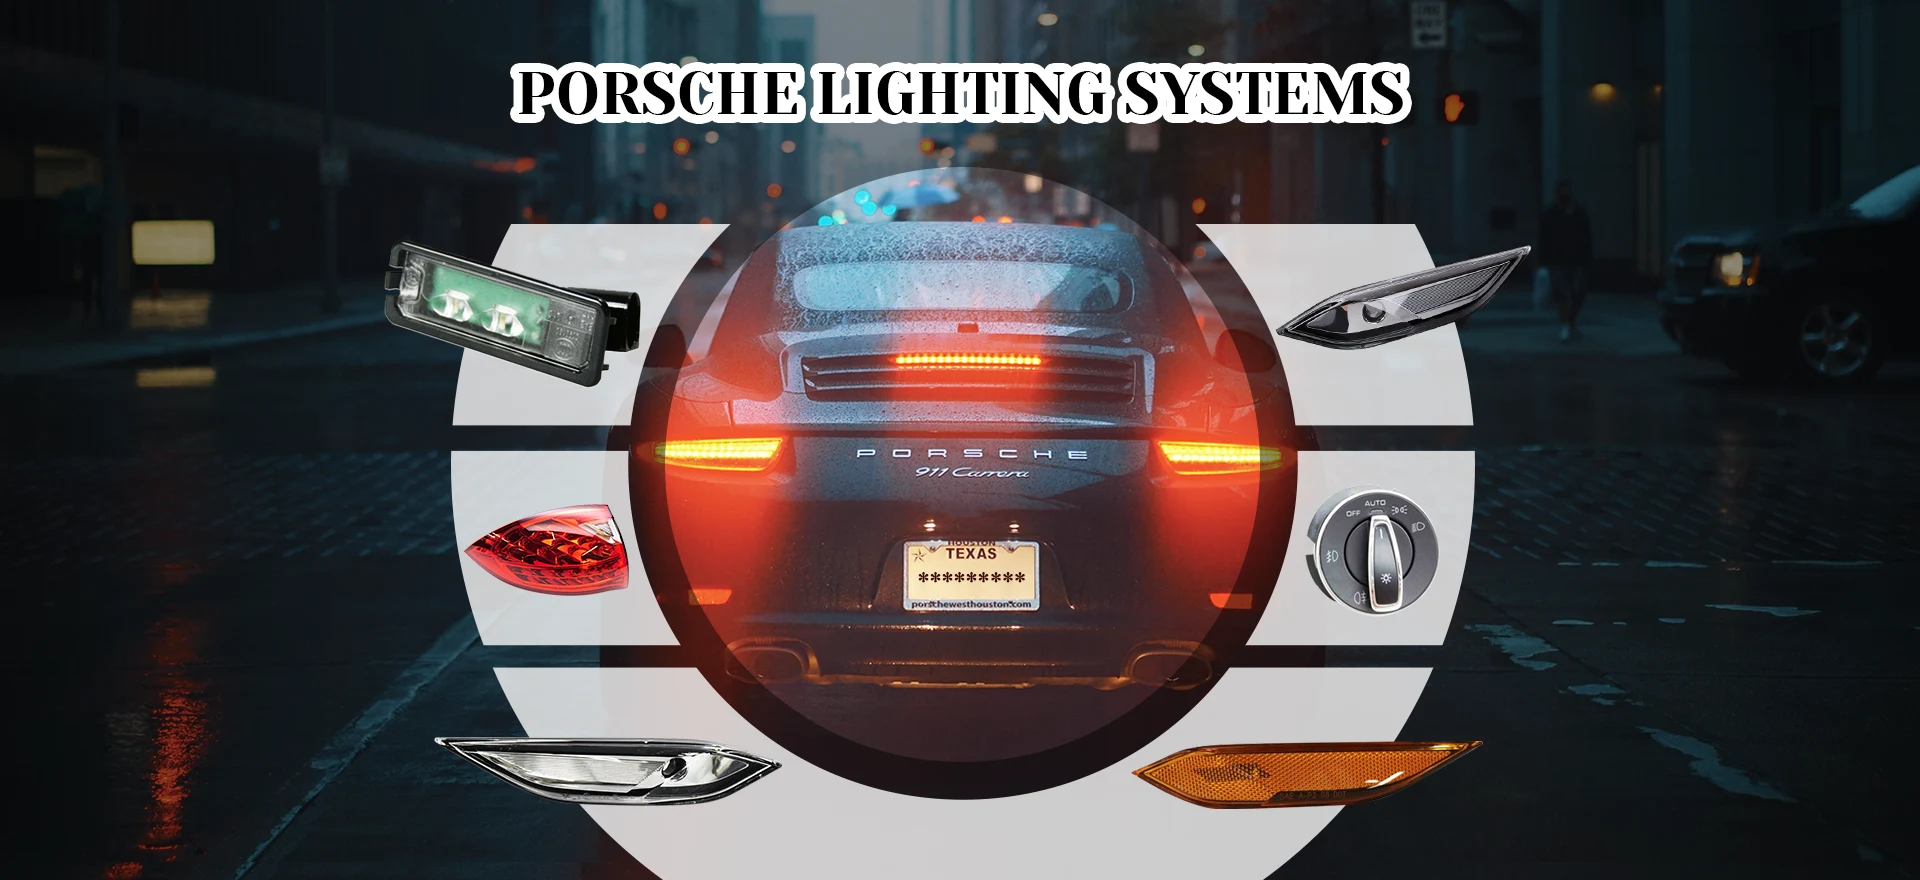 Porsche világítási rendszerek gyártója